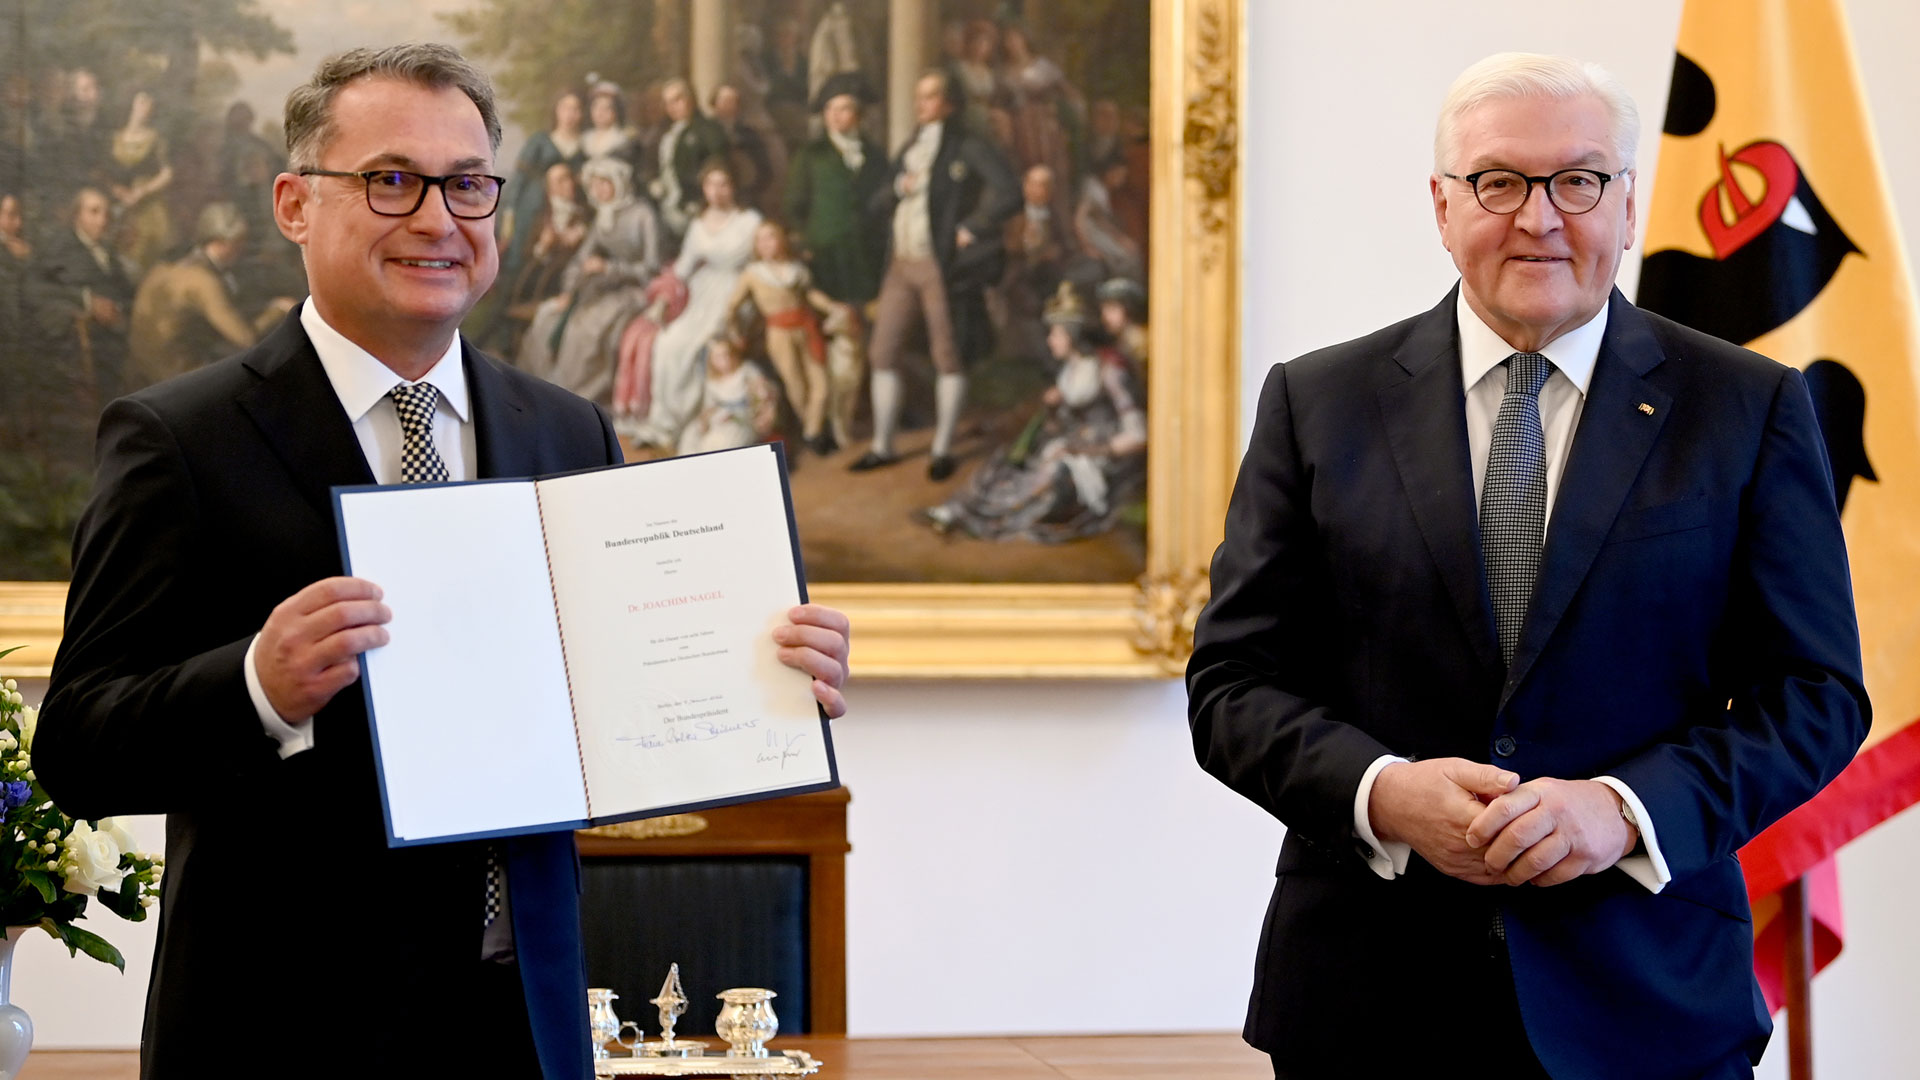 Bundespräsident Frank-Walter Steinmeier (r) überreicht Joachim Nagel, dem neuen Präsidenten der Deutschen Bundesbank,die Ernennungsurkunde. | picture alliance/dpa/dpa-Zentral